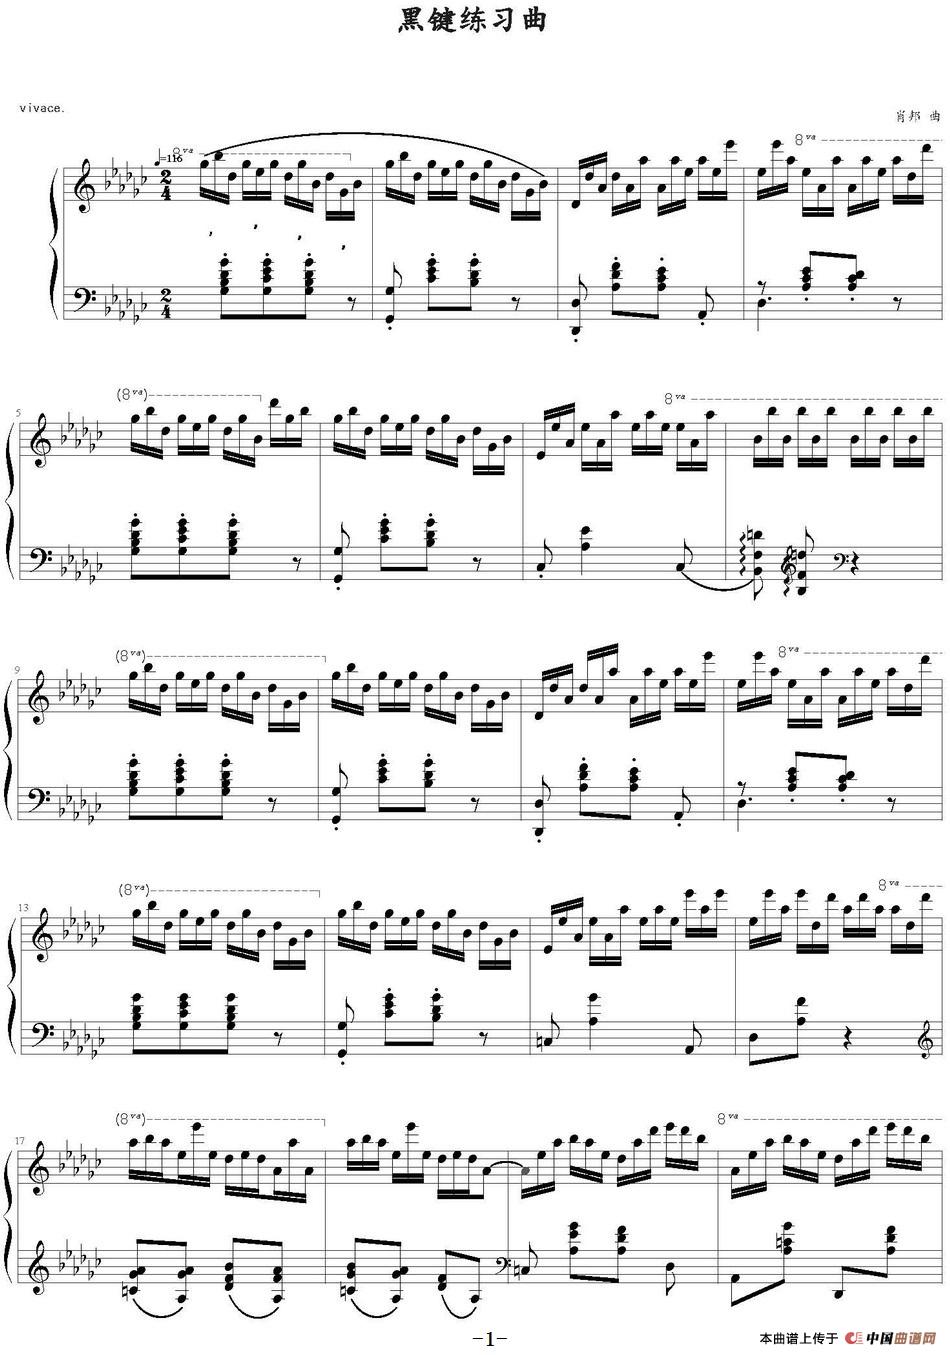 《黑键练习曲》钢琴曲谱图分享